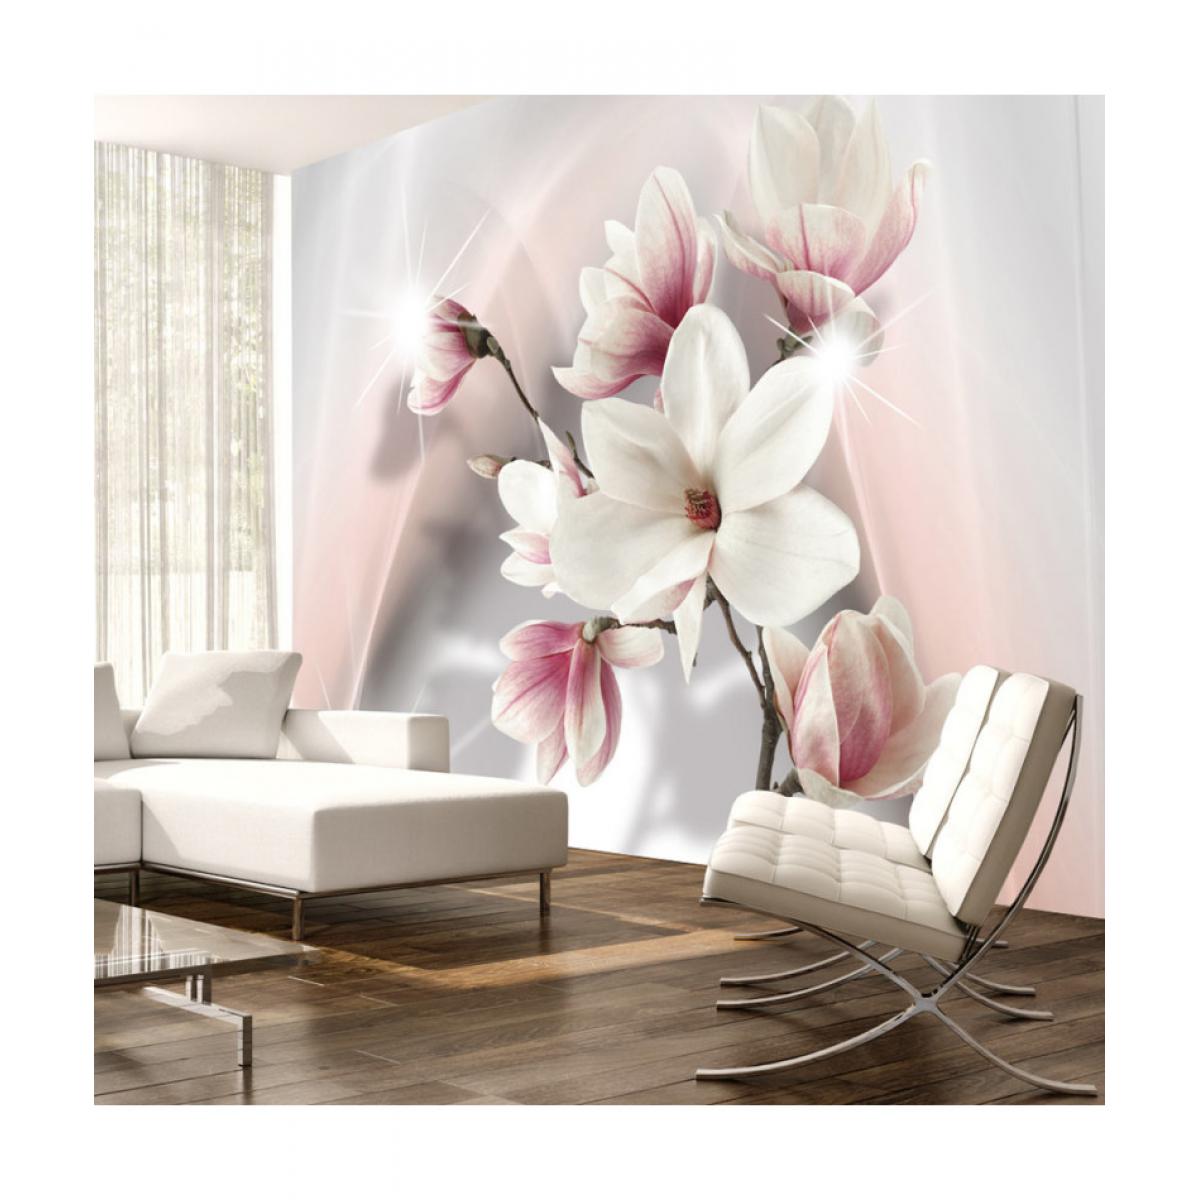 Artgeist - Papier peint - White magnolias 150x105 - Papier peint